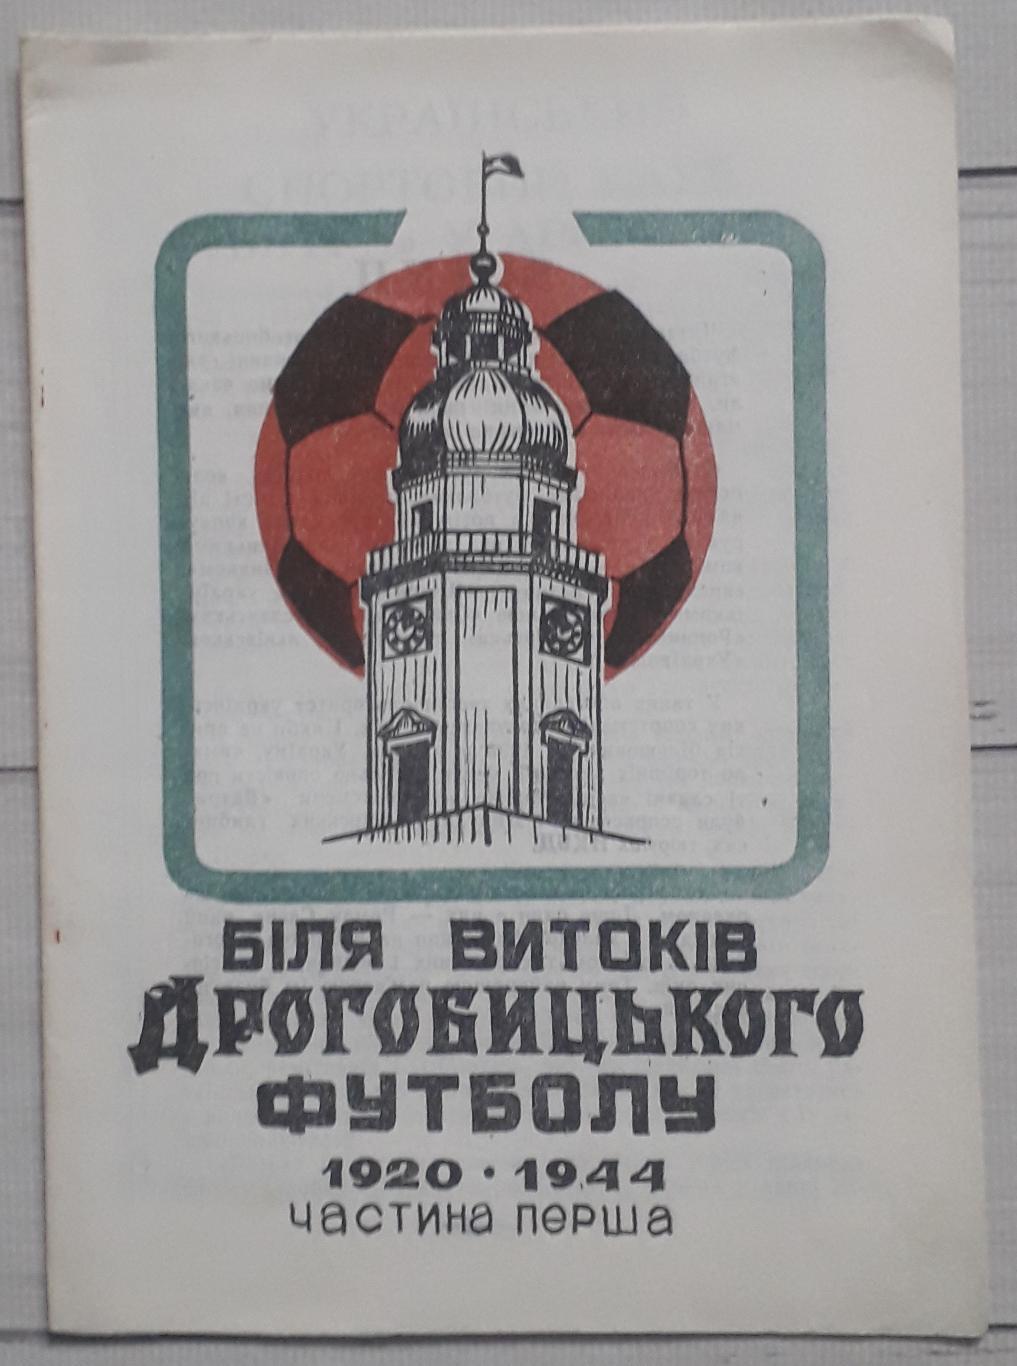 У истоков Дрогобычского футбола 1920-1941. часть первая